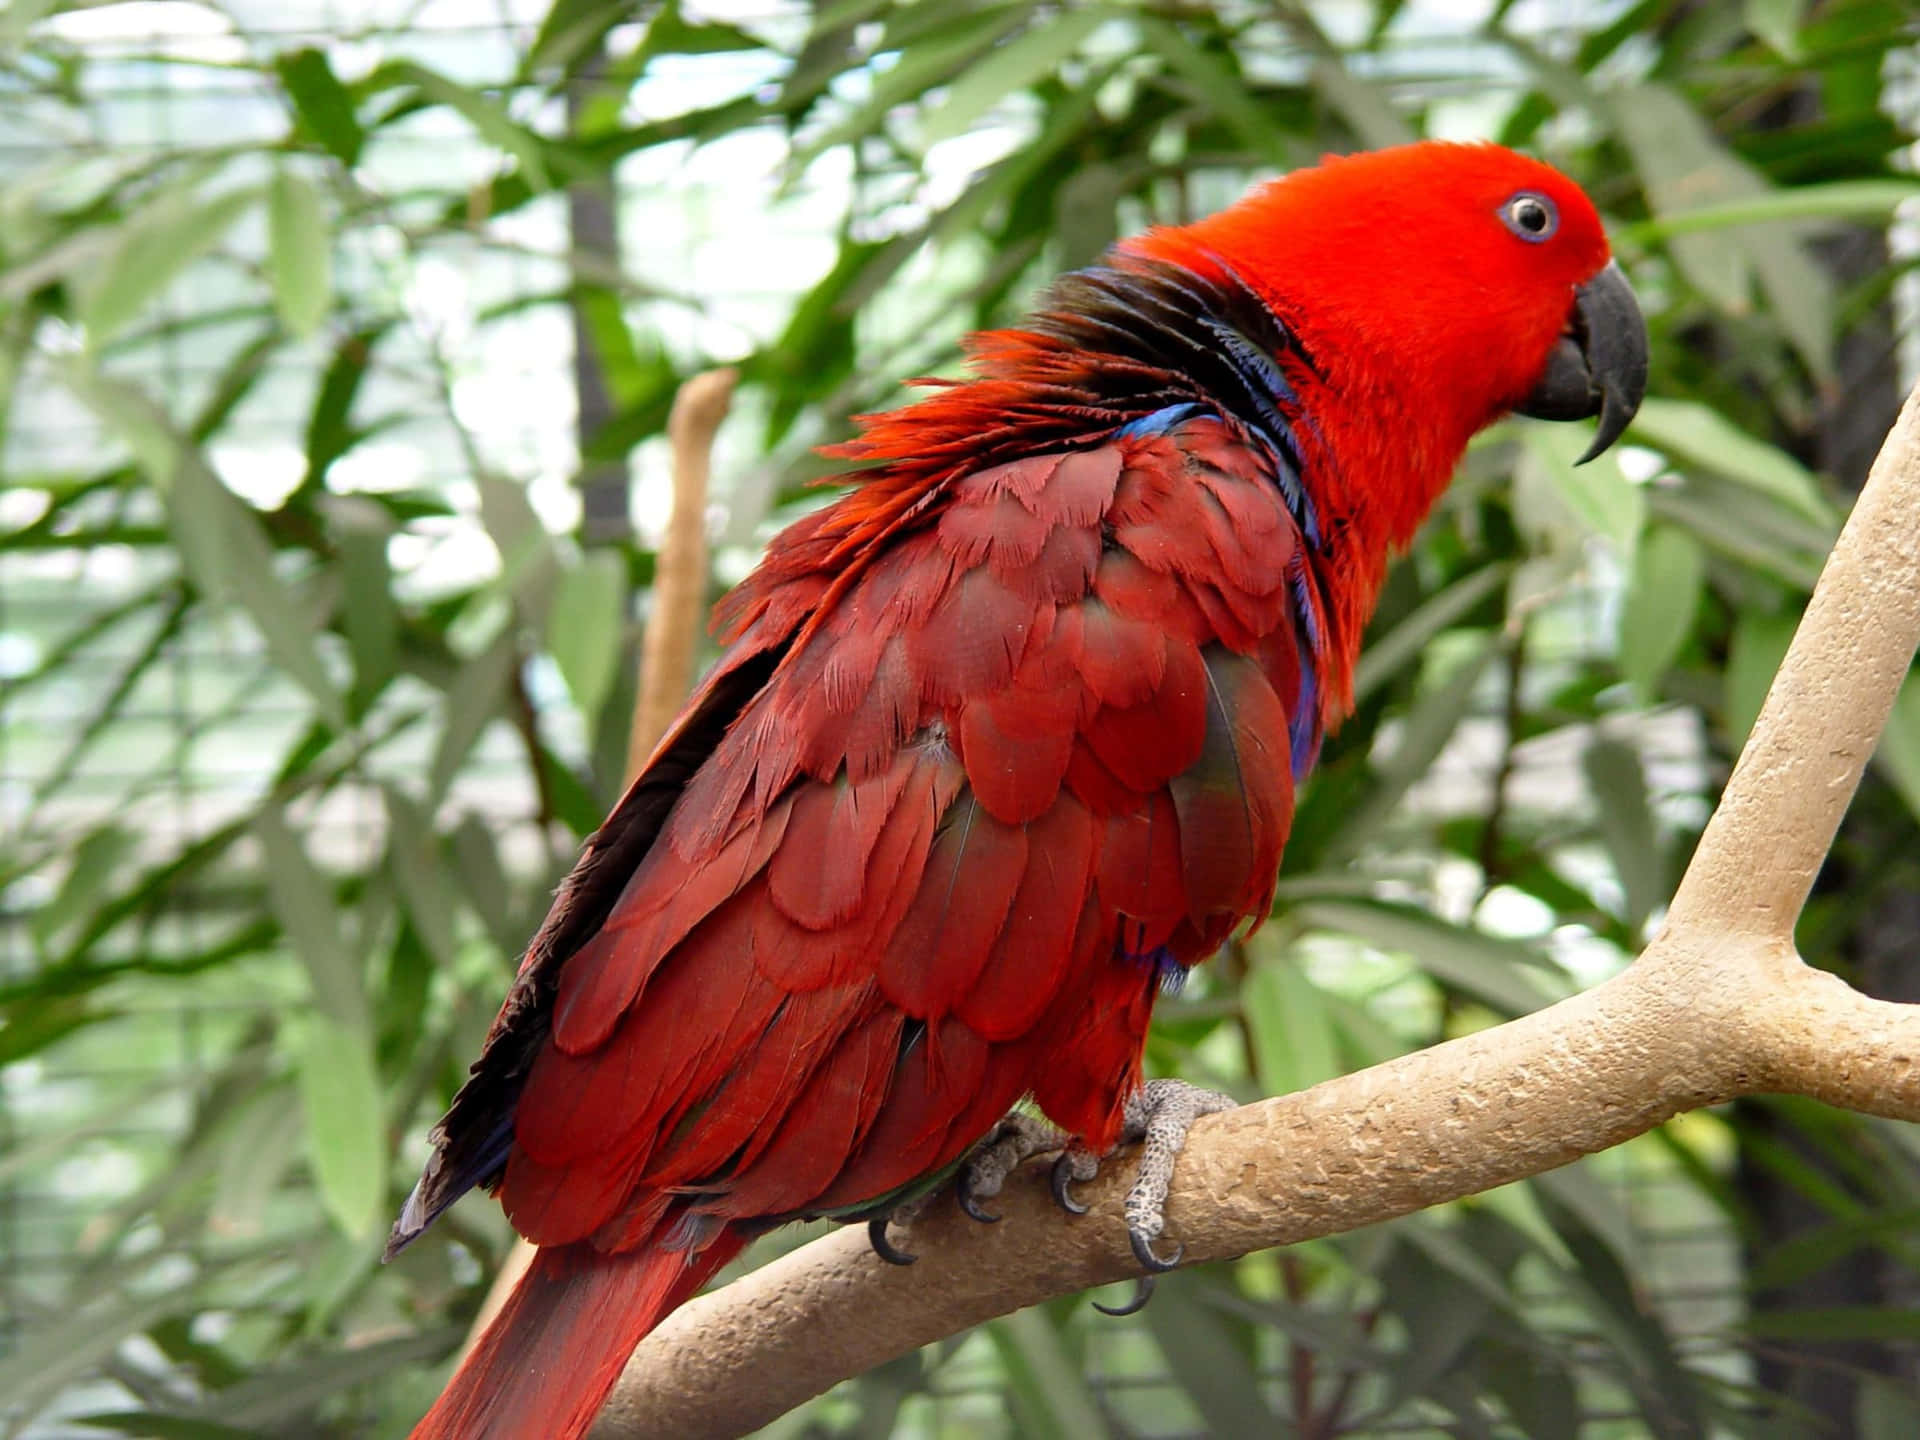 A colorful parrot perched in a verdant landscape